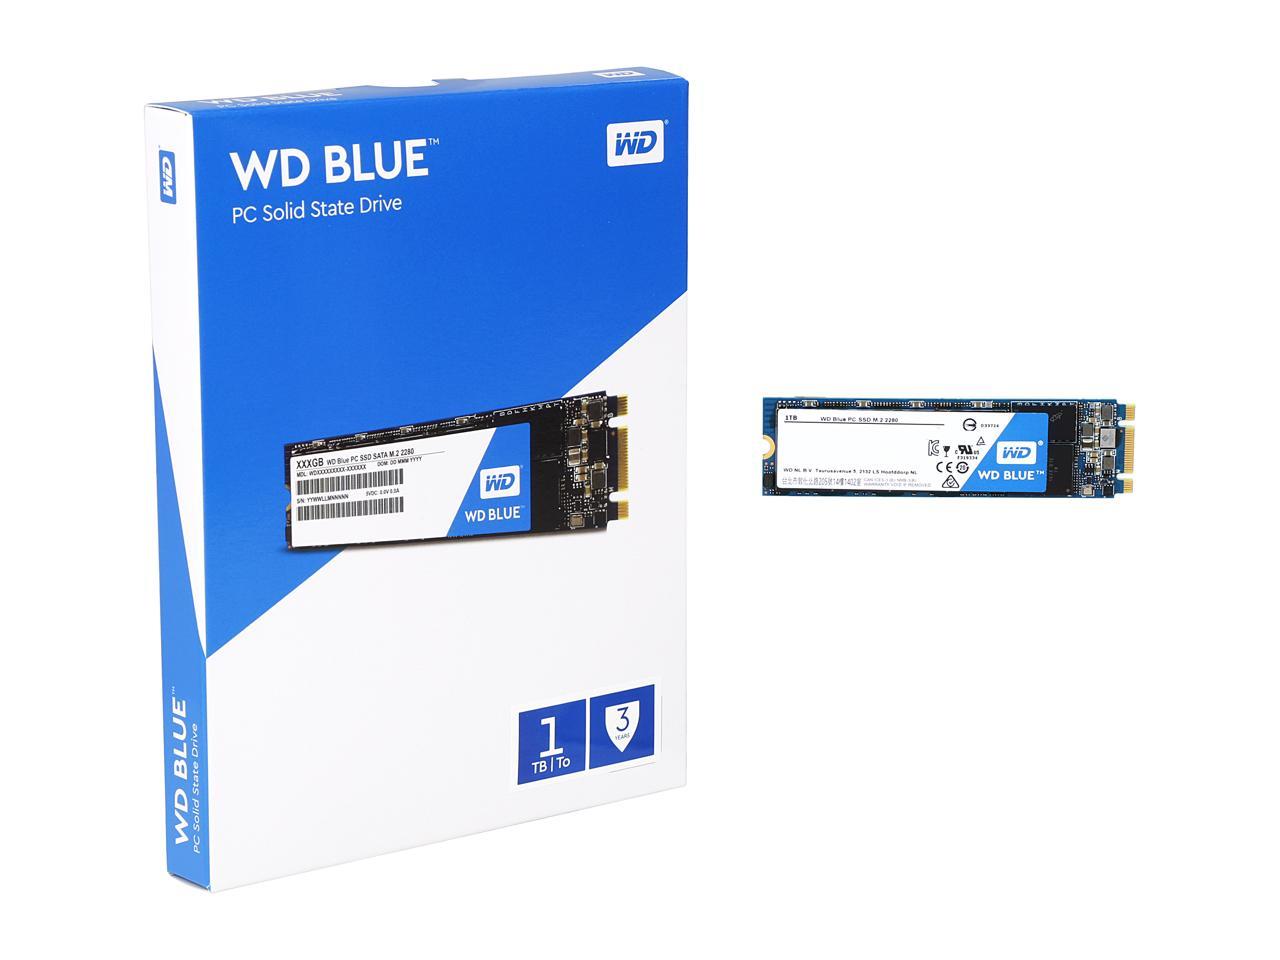 WD Blue M.2 1TB Internal SSD Solid State Drive - SATA 6Gb/s - WDS100T1B0B